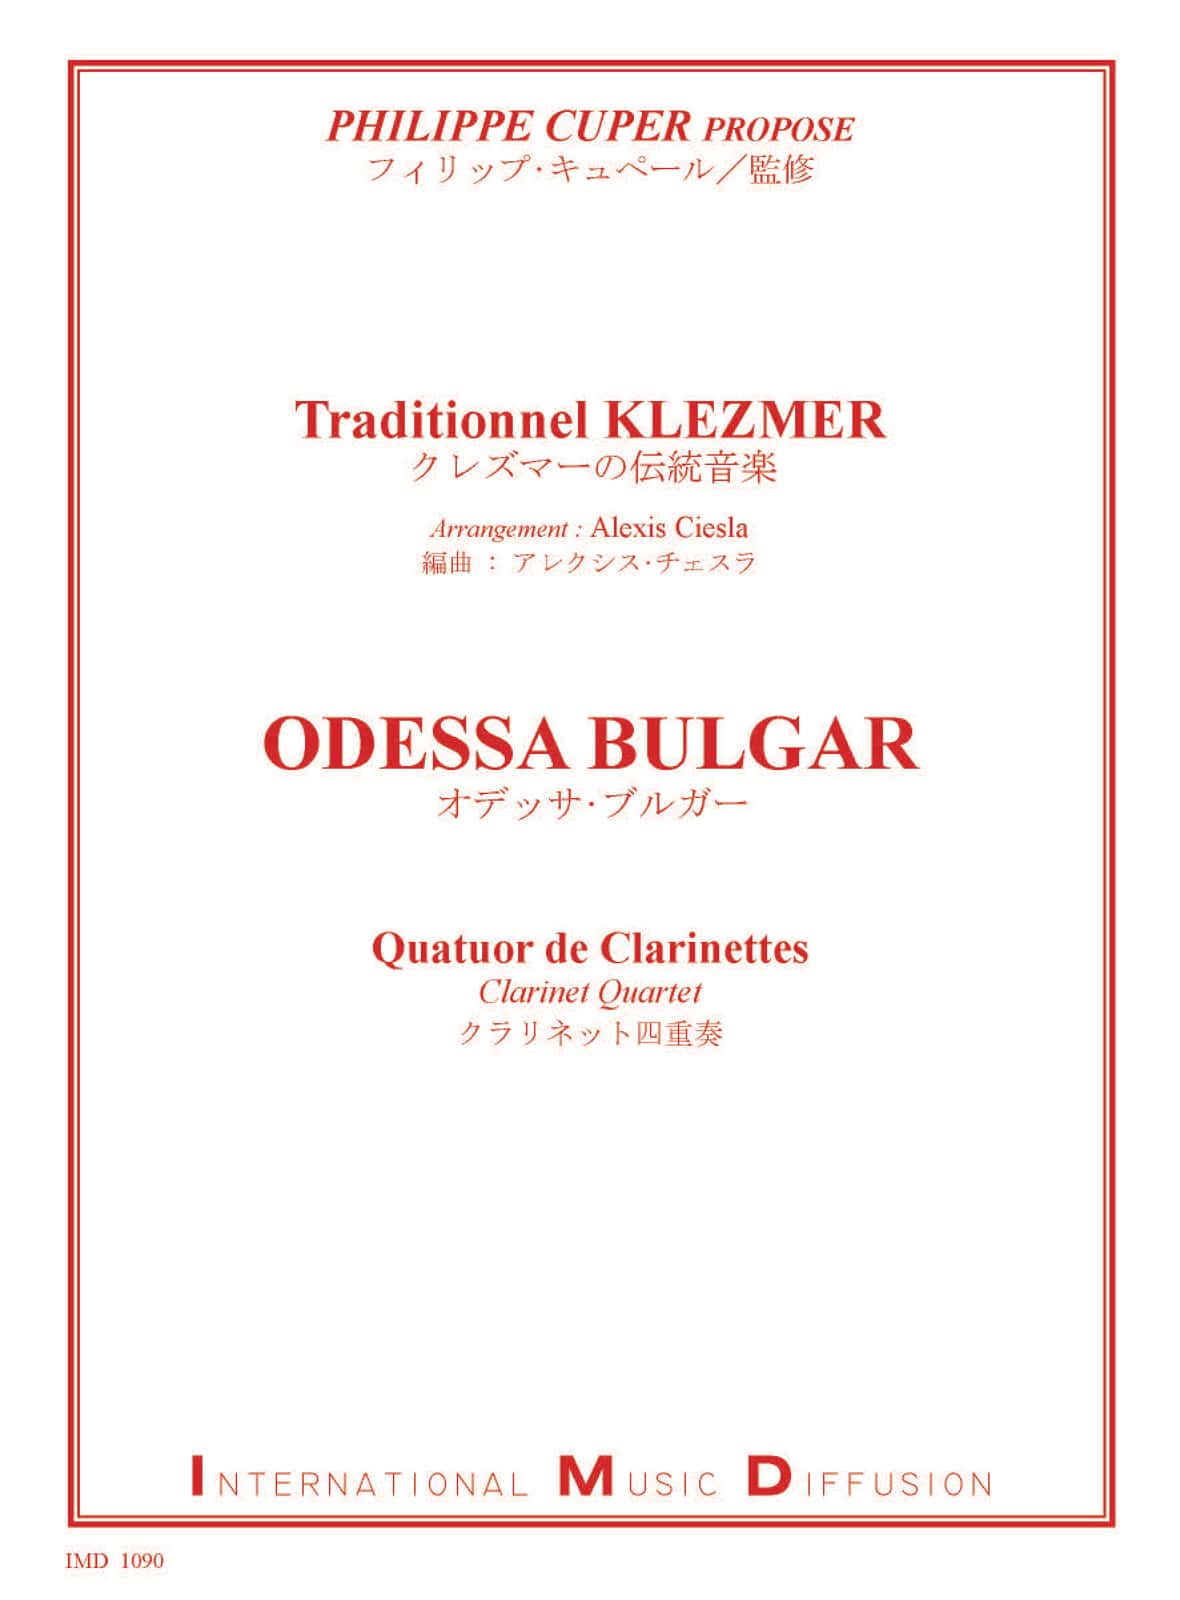 IMD ARPEGES KLEZMER - ODESSA BULGAR - QUATUOR DE CLARINETTES